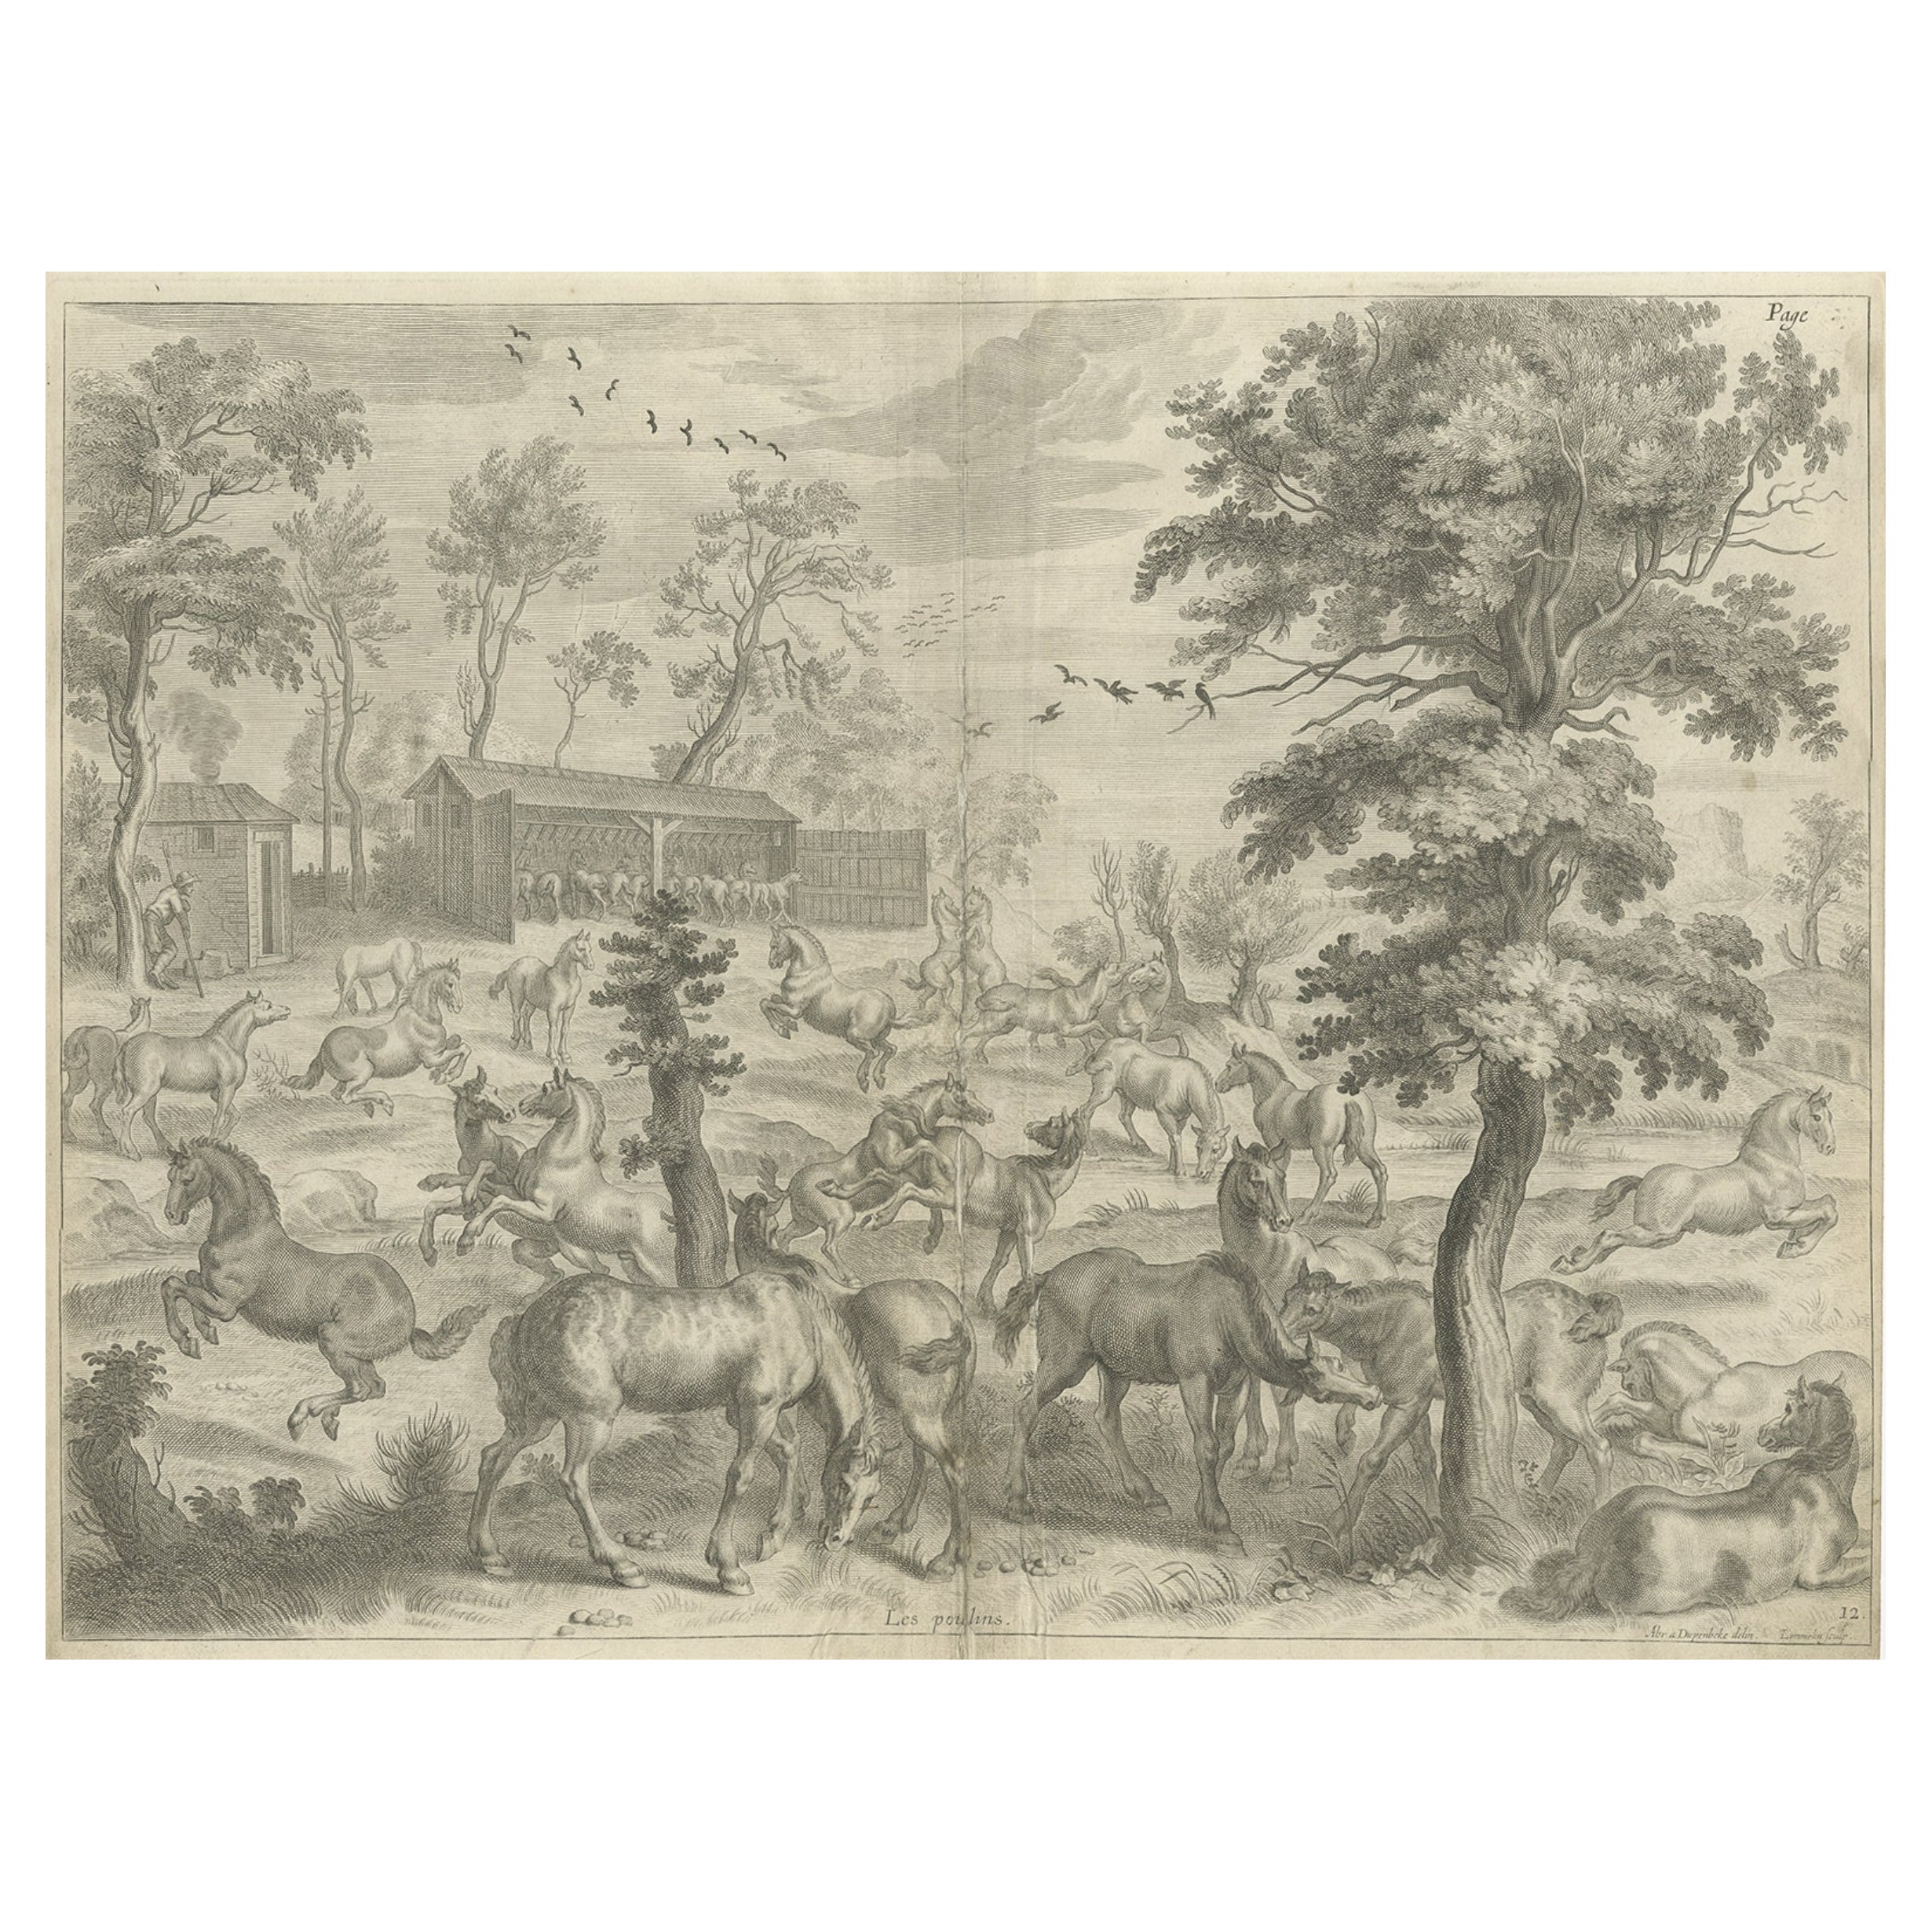 Ancienne et intéressante estampe rare d'une étude de chevaux, vers 1665